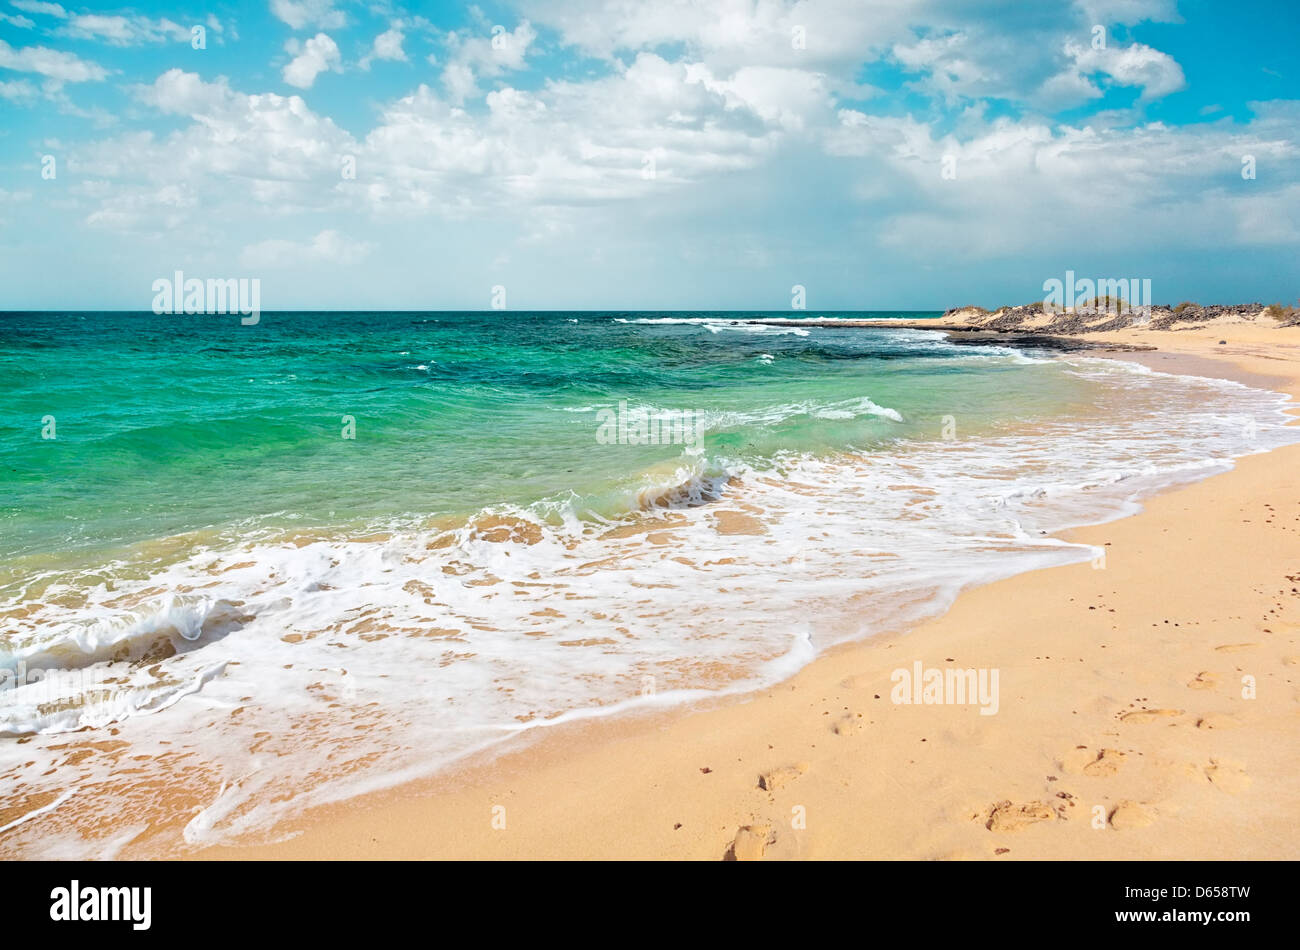 Sandy beach on the Atlantic coast the Canary Islands Stock Photo